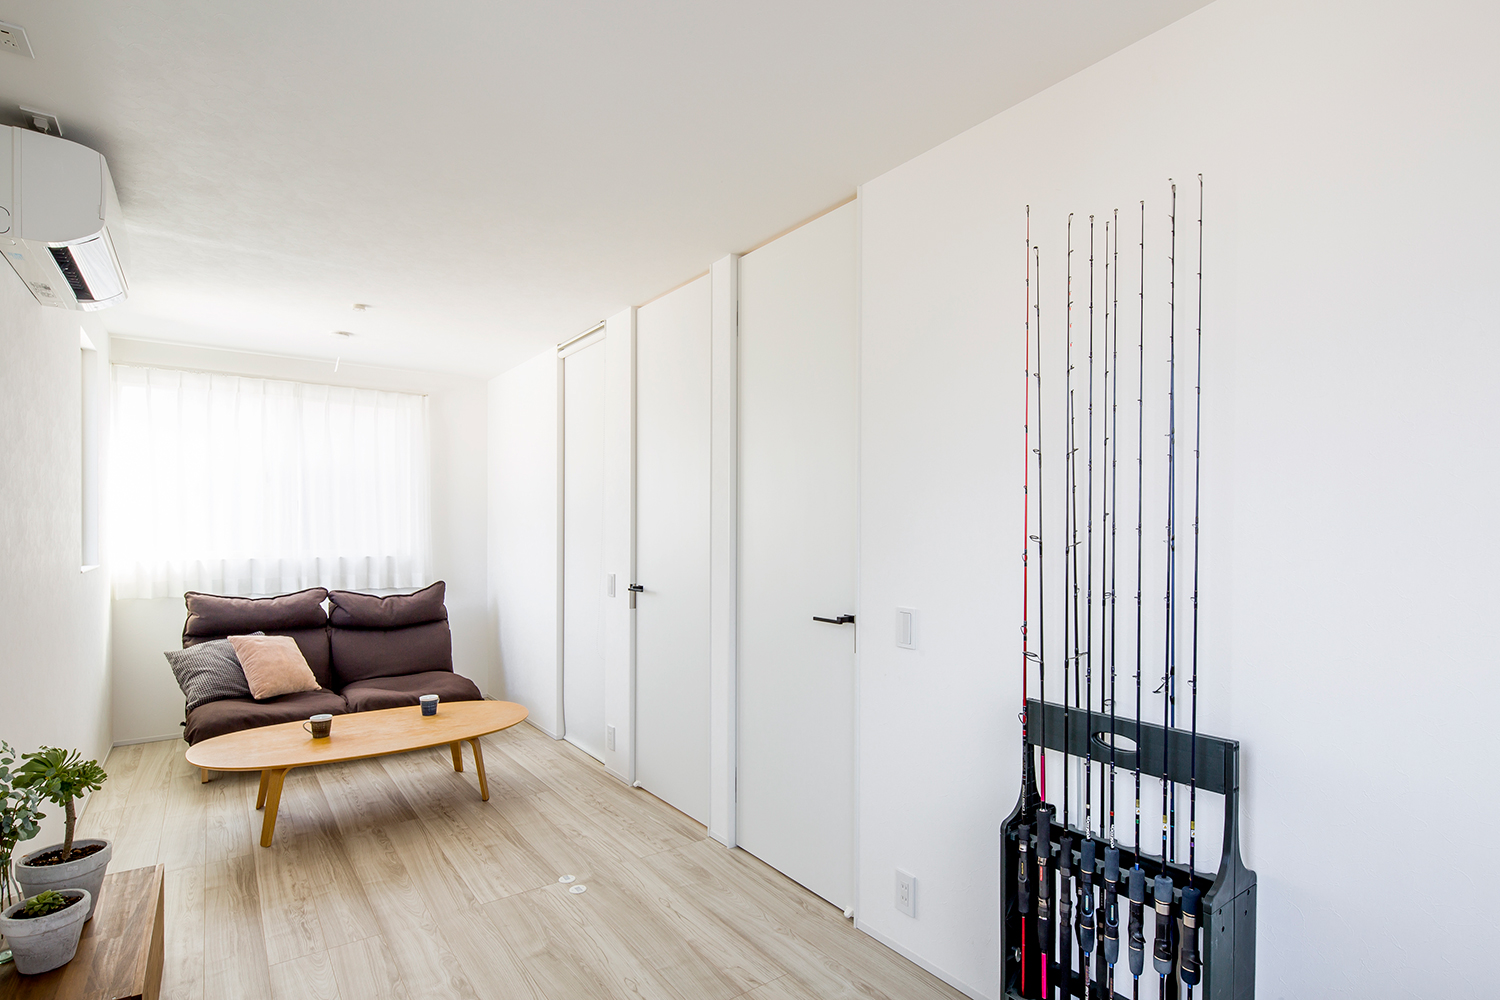 釣り竿を飾るスペースを設けた白い壁のLDK・デザイン住宅